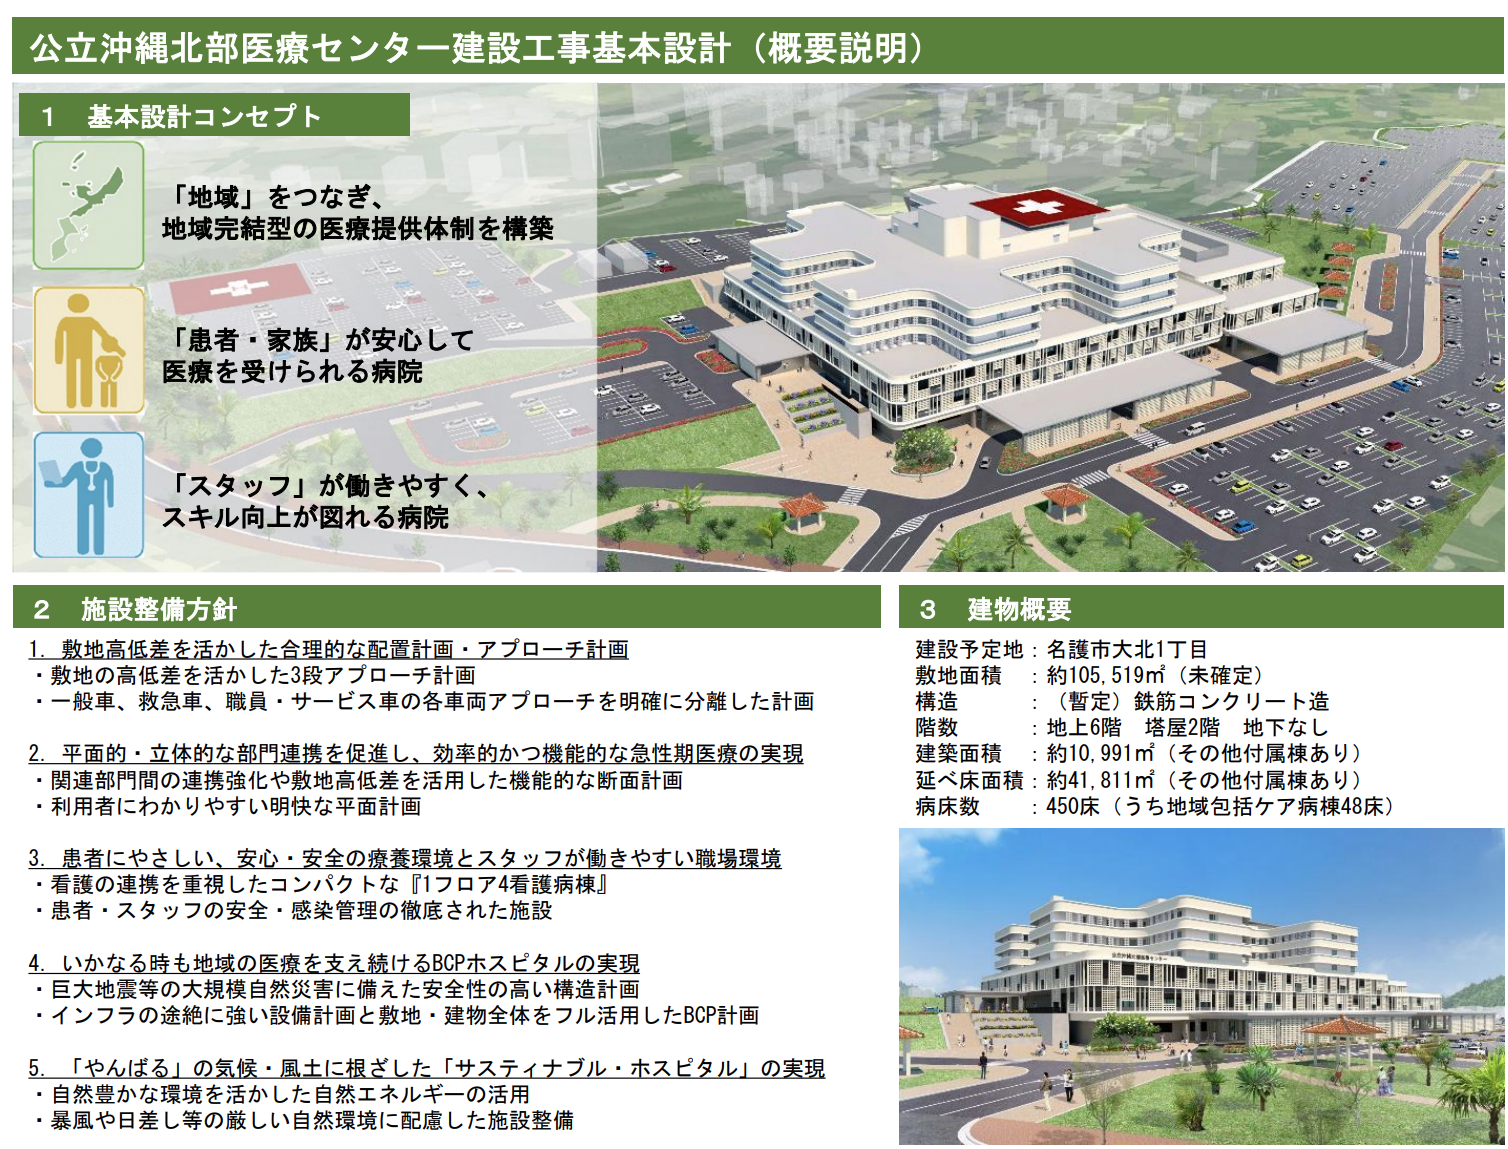 公立沖縄北部医療センター 基本設計進捗状況